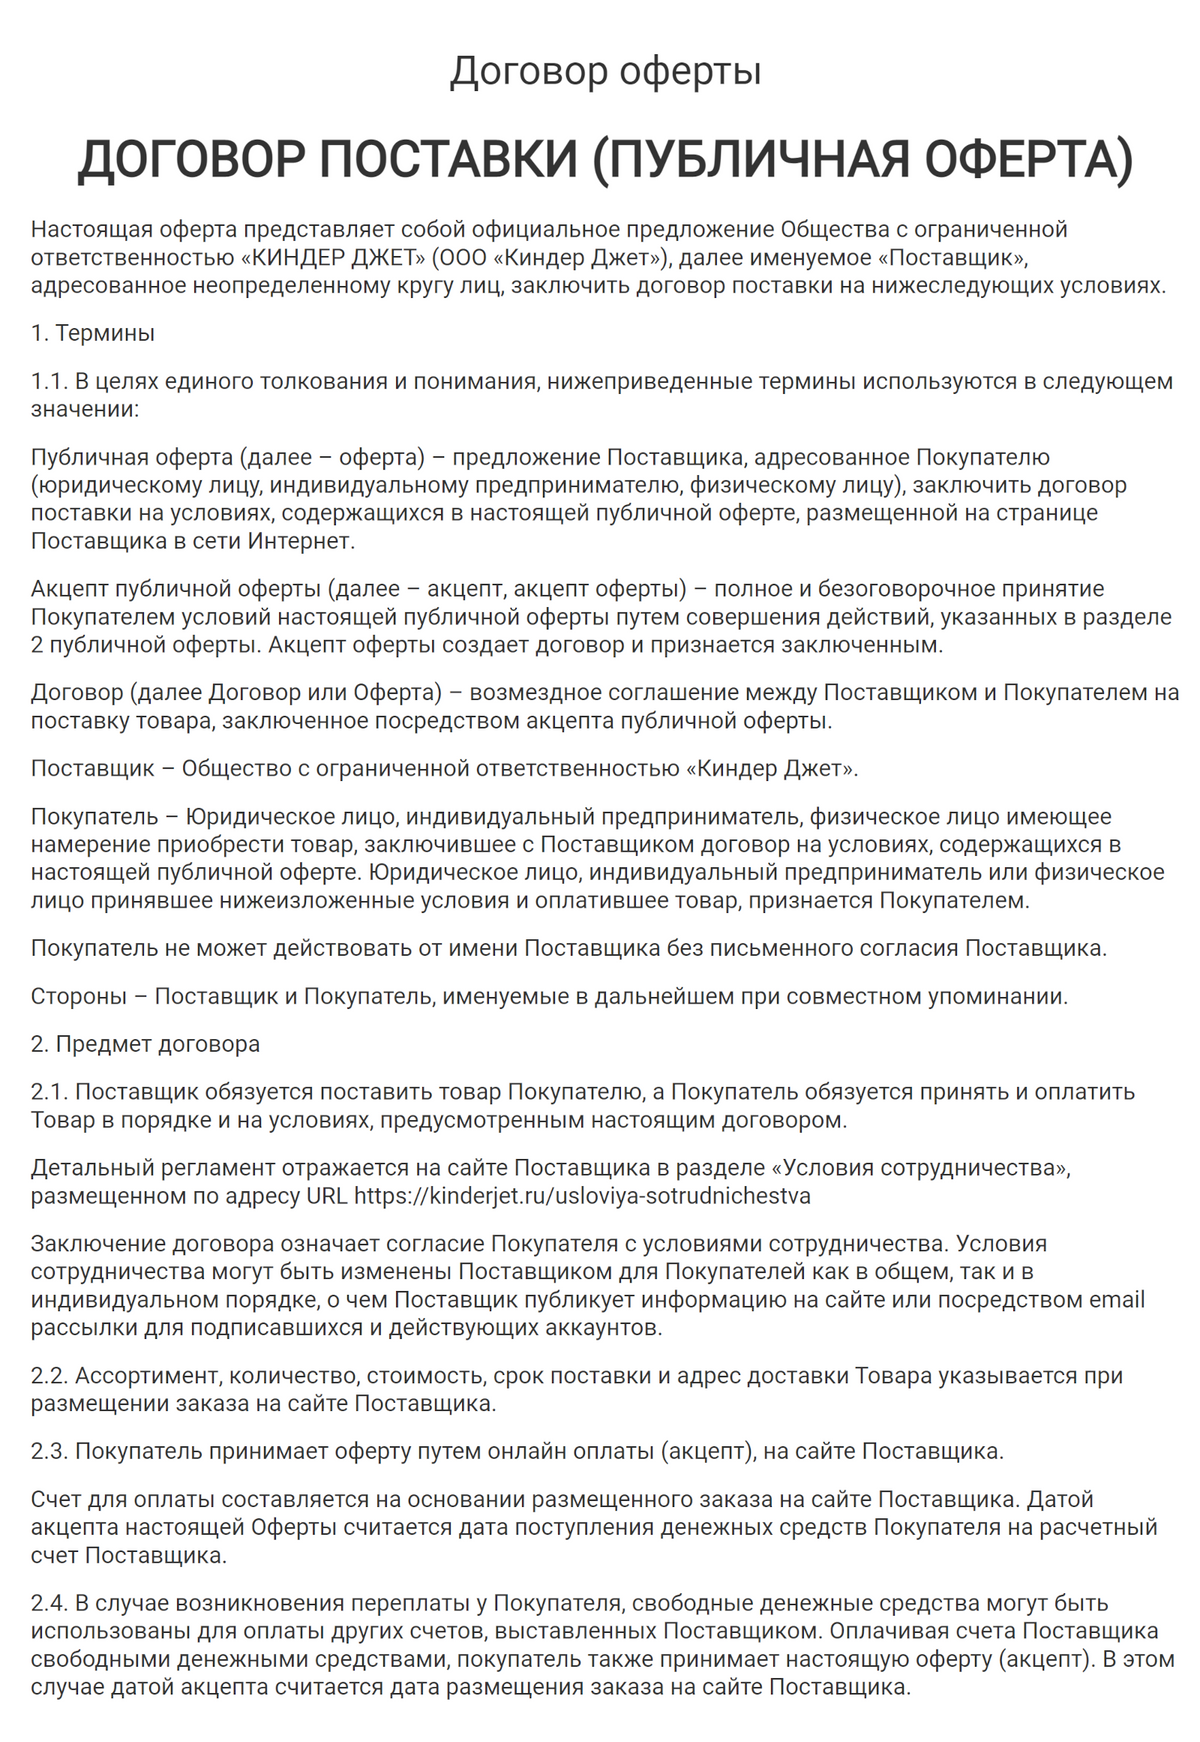 Пример договора-оферты с поставщиком товаров. Источник: kinderjet.ru